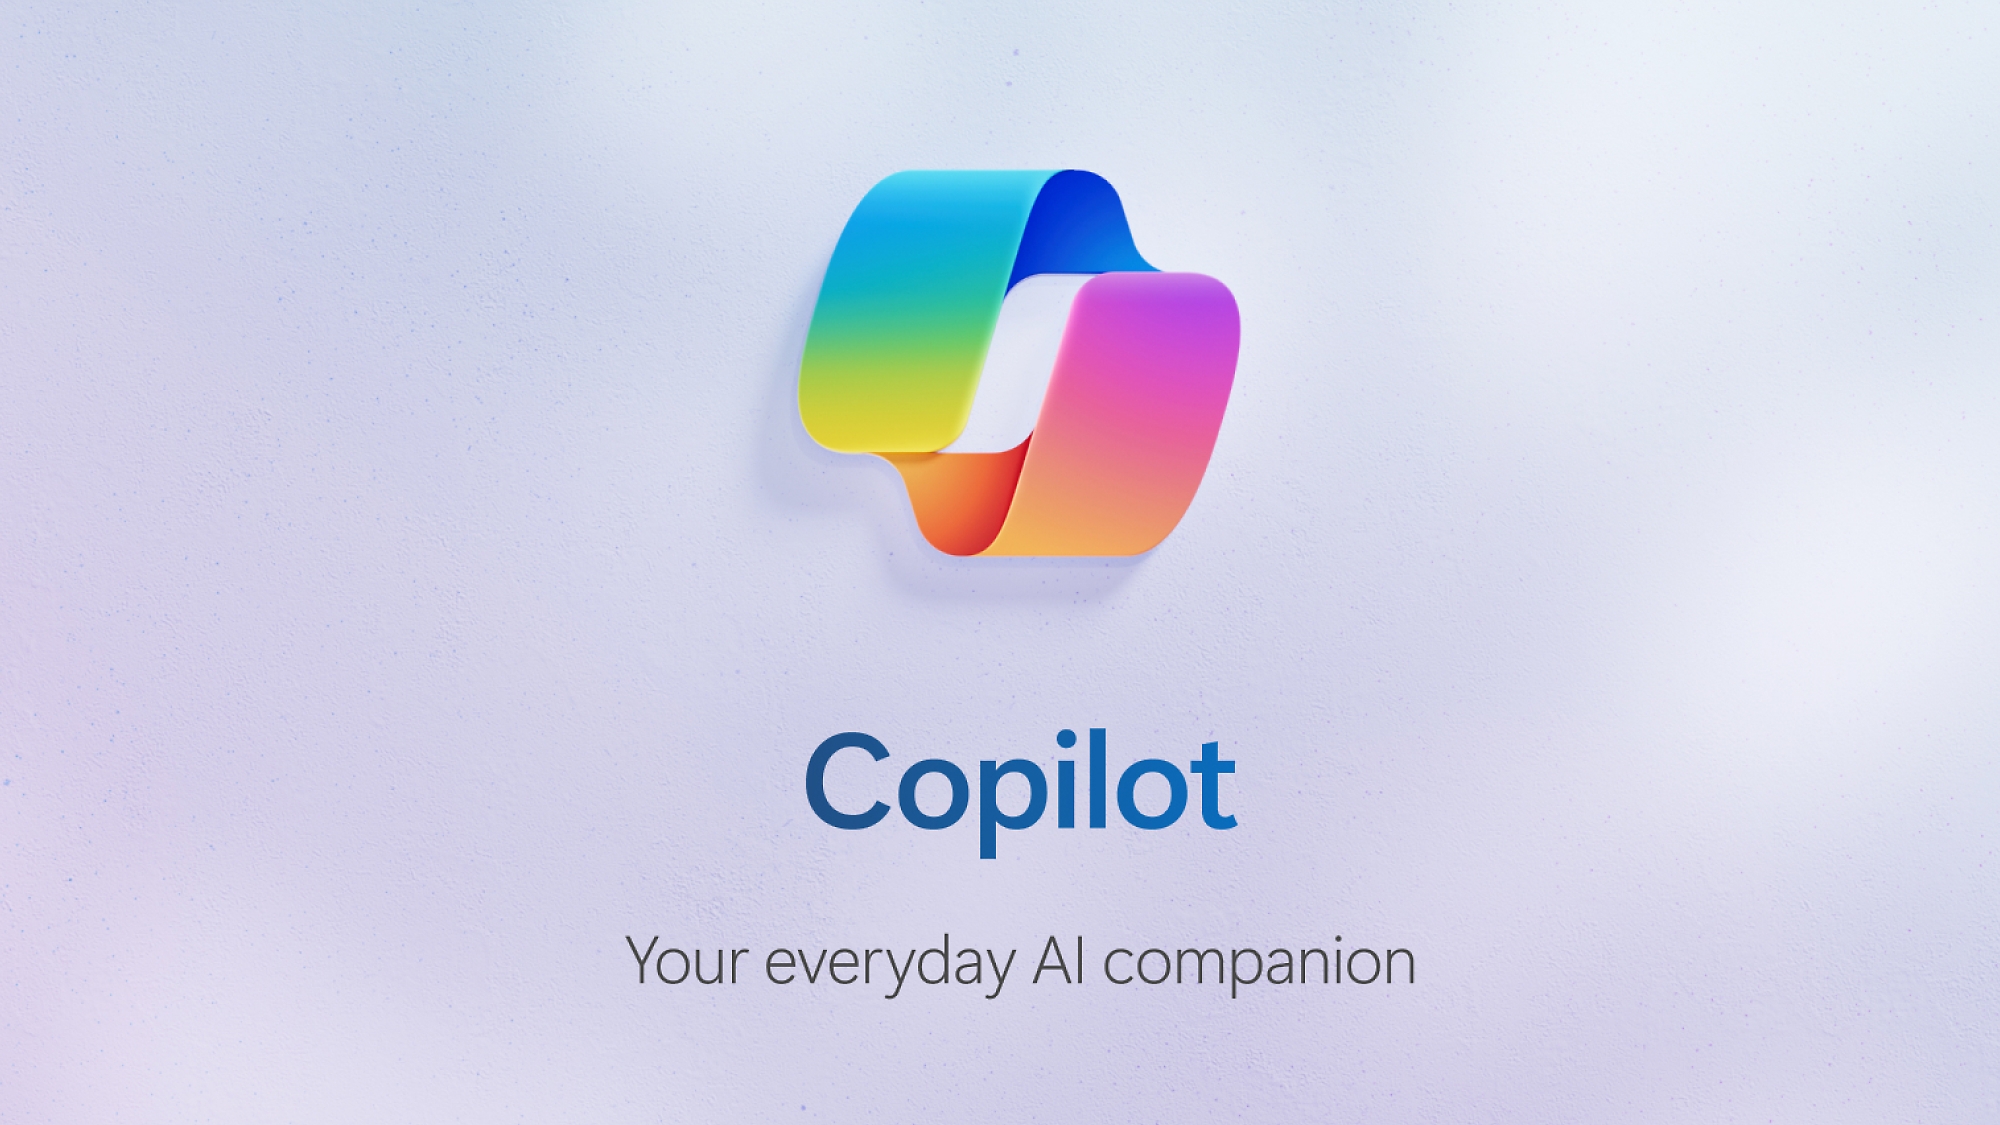 Miniature vidéo pour la vidéo Copilot avec le logo Copilot